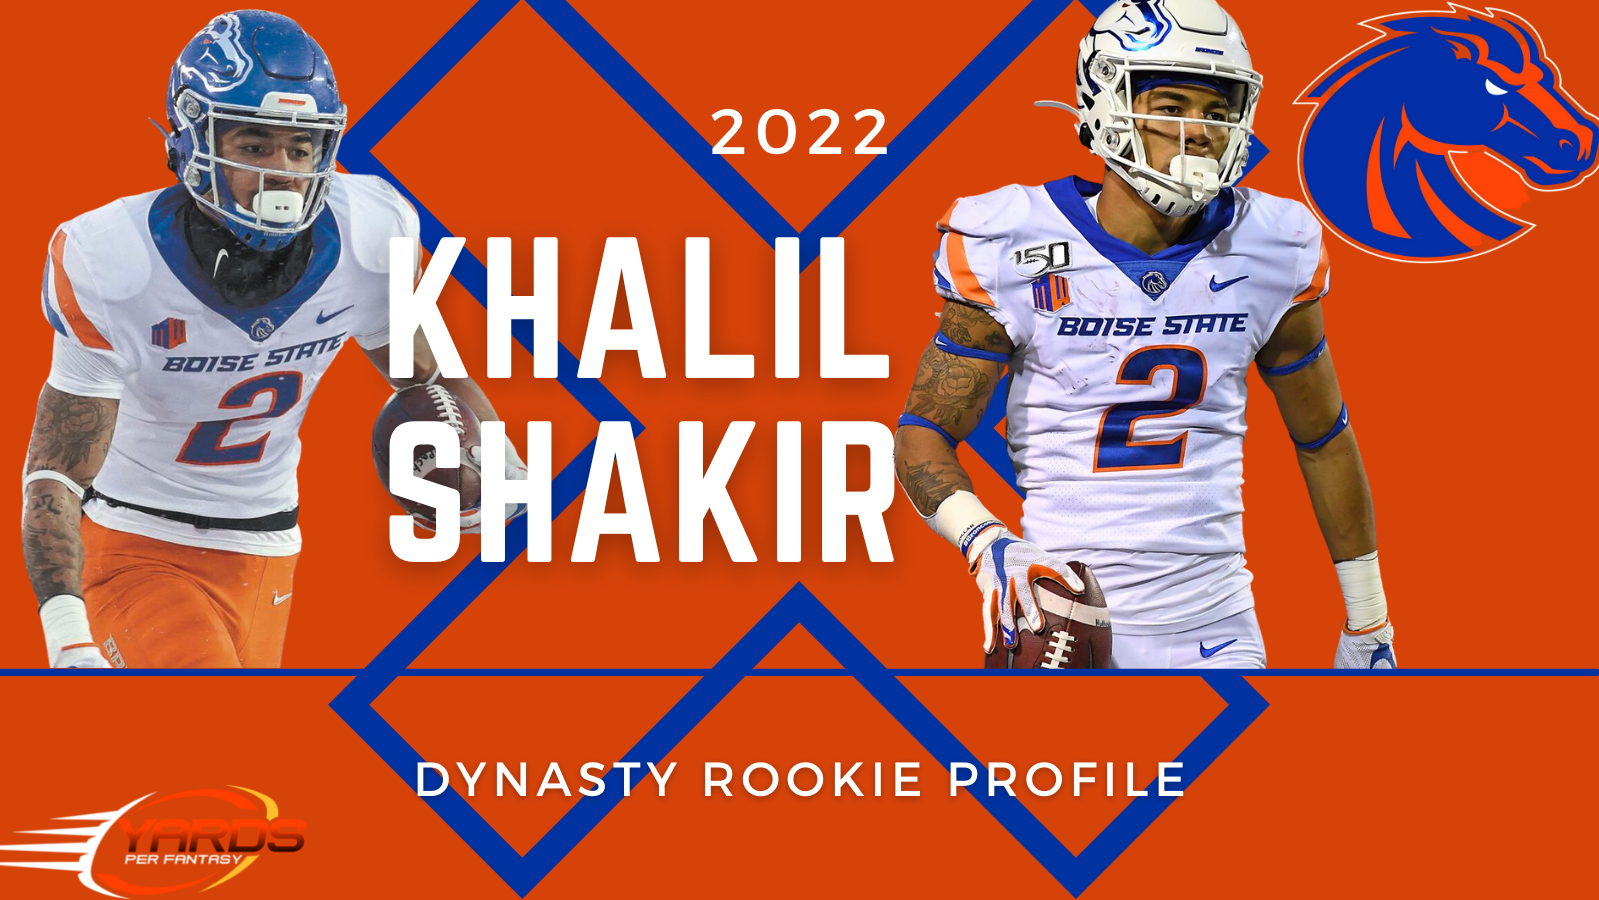 Khalil Shakir 2022 Dynasty Rookie Profile Yards Per Fantasy